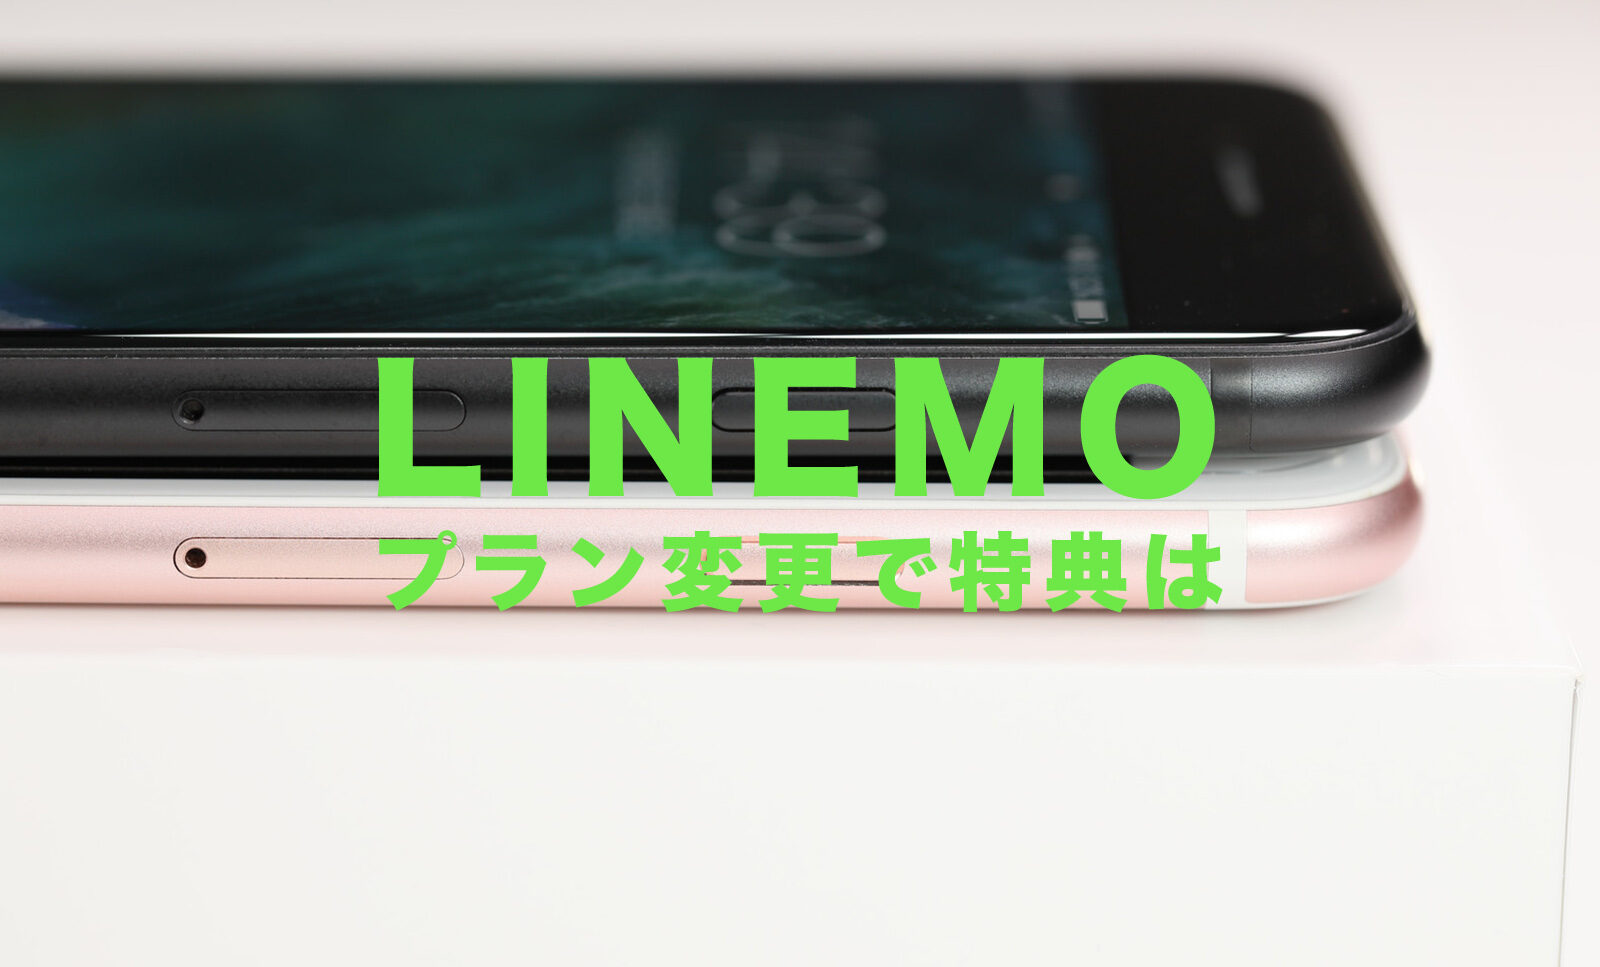 LINEMO(ラインモ)のキャンペーンはプラン変更したら最大10000円相当分はもらえない？のサムネイル画像